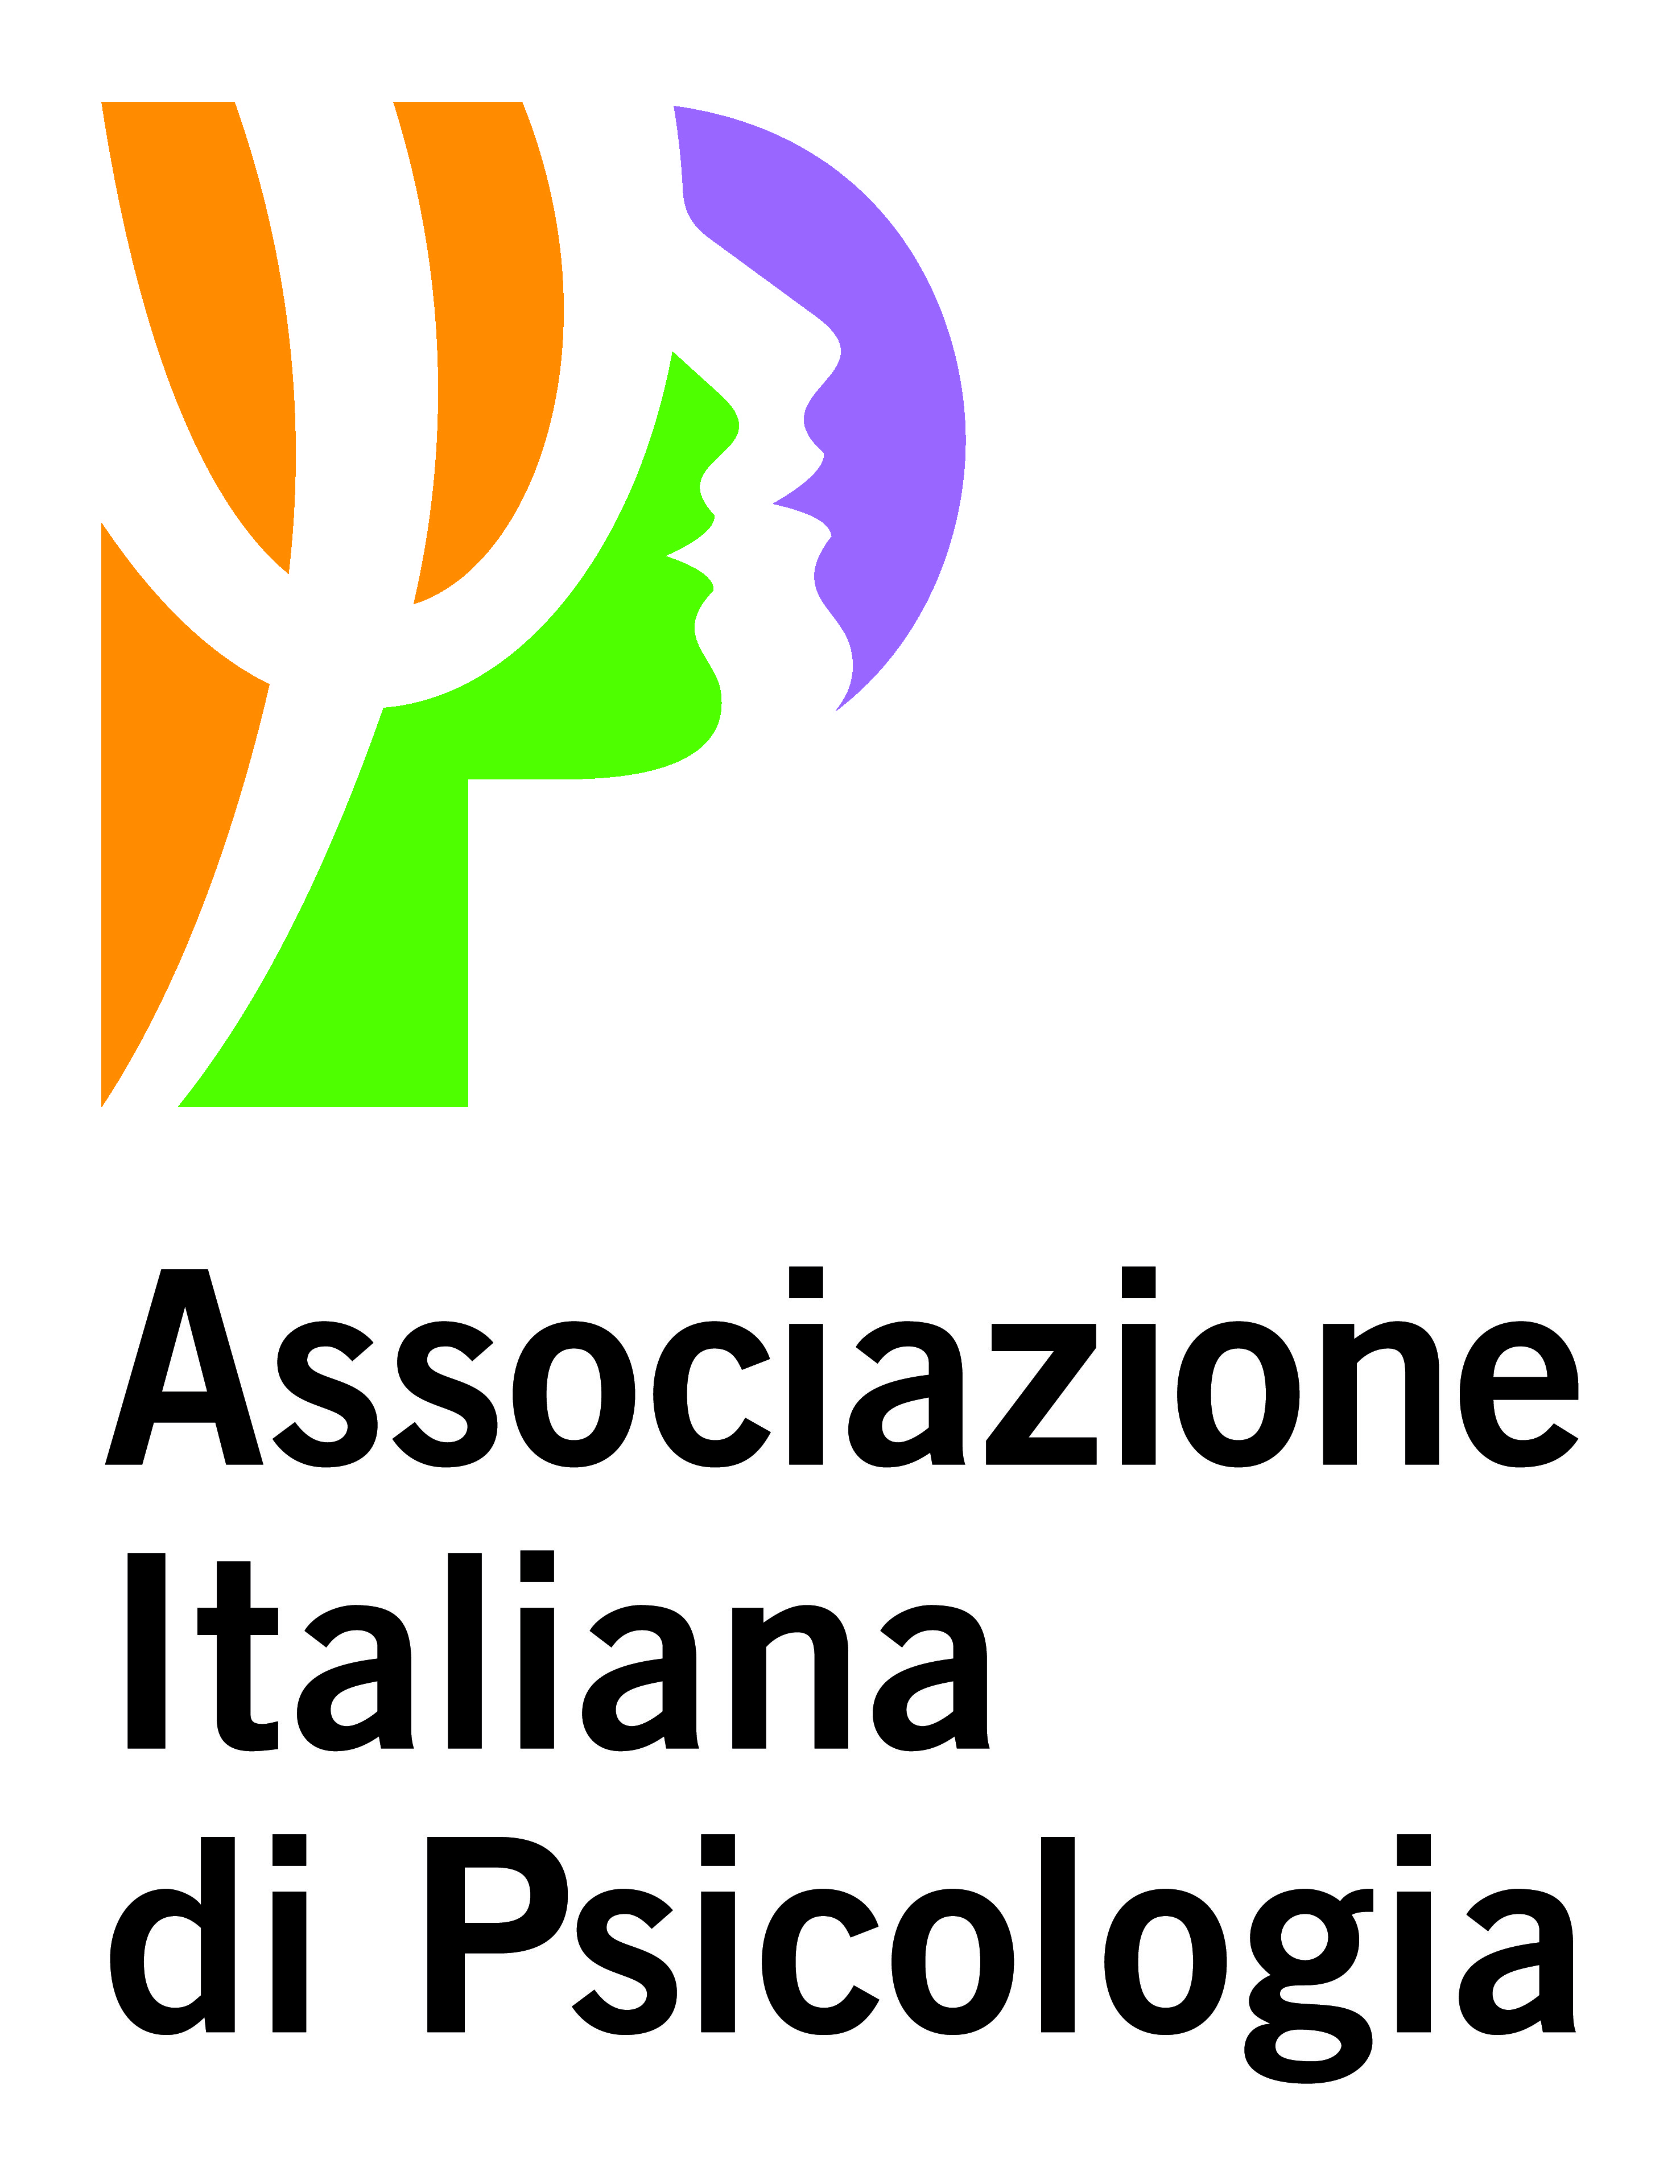 Associazione Italiana di Psicologia